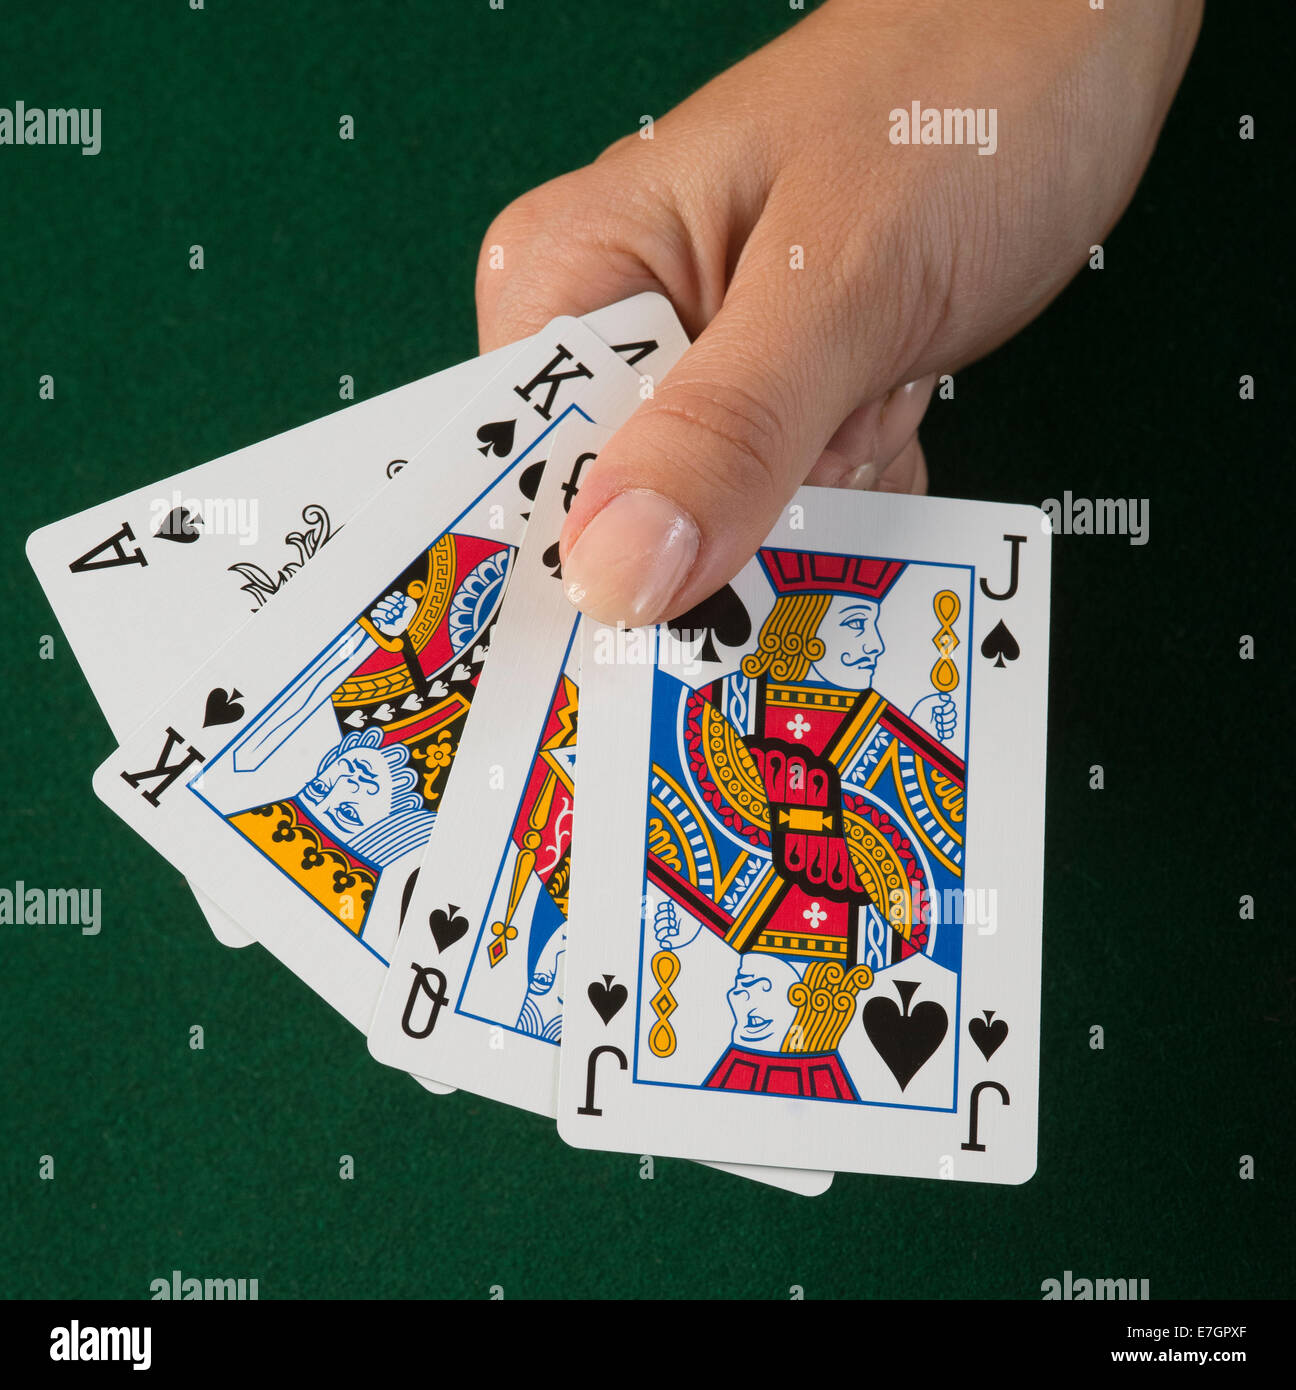 Ace king queen spades -Fotos und -Bildmaterial in hoher Auflösung – Alamy